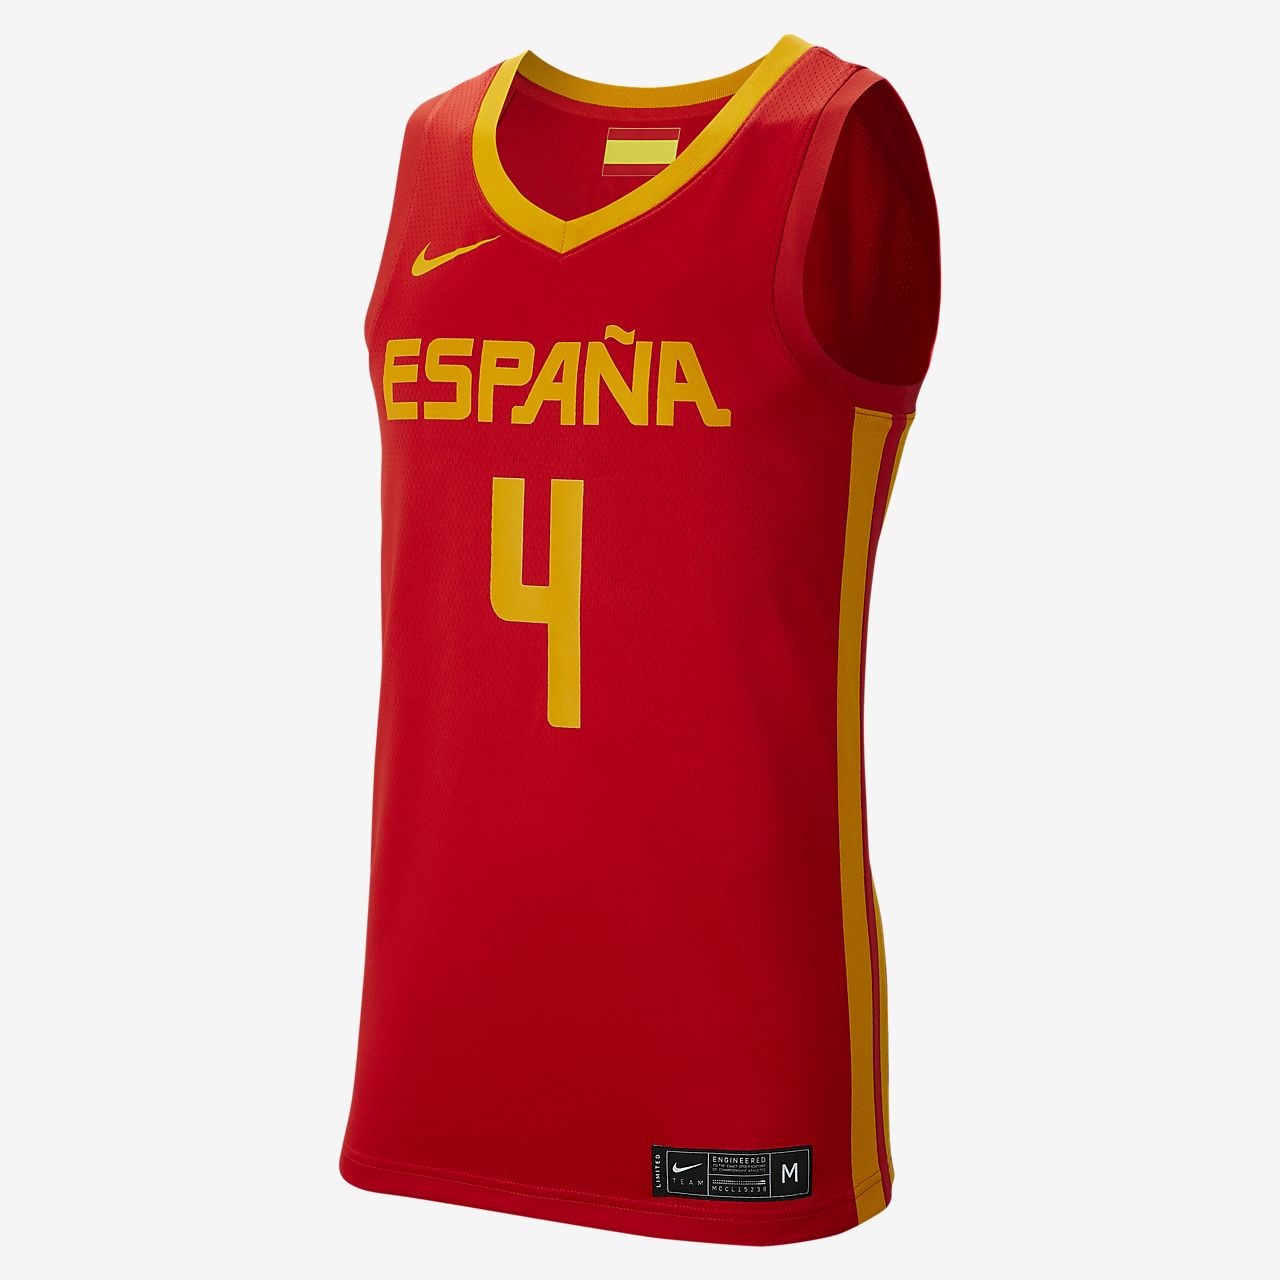 mochila nike seleccion española baloncesto baratas online